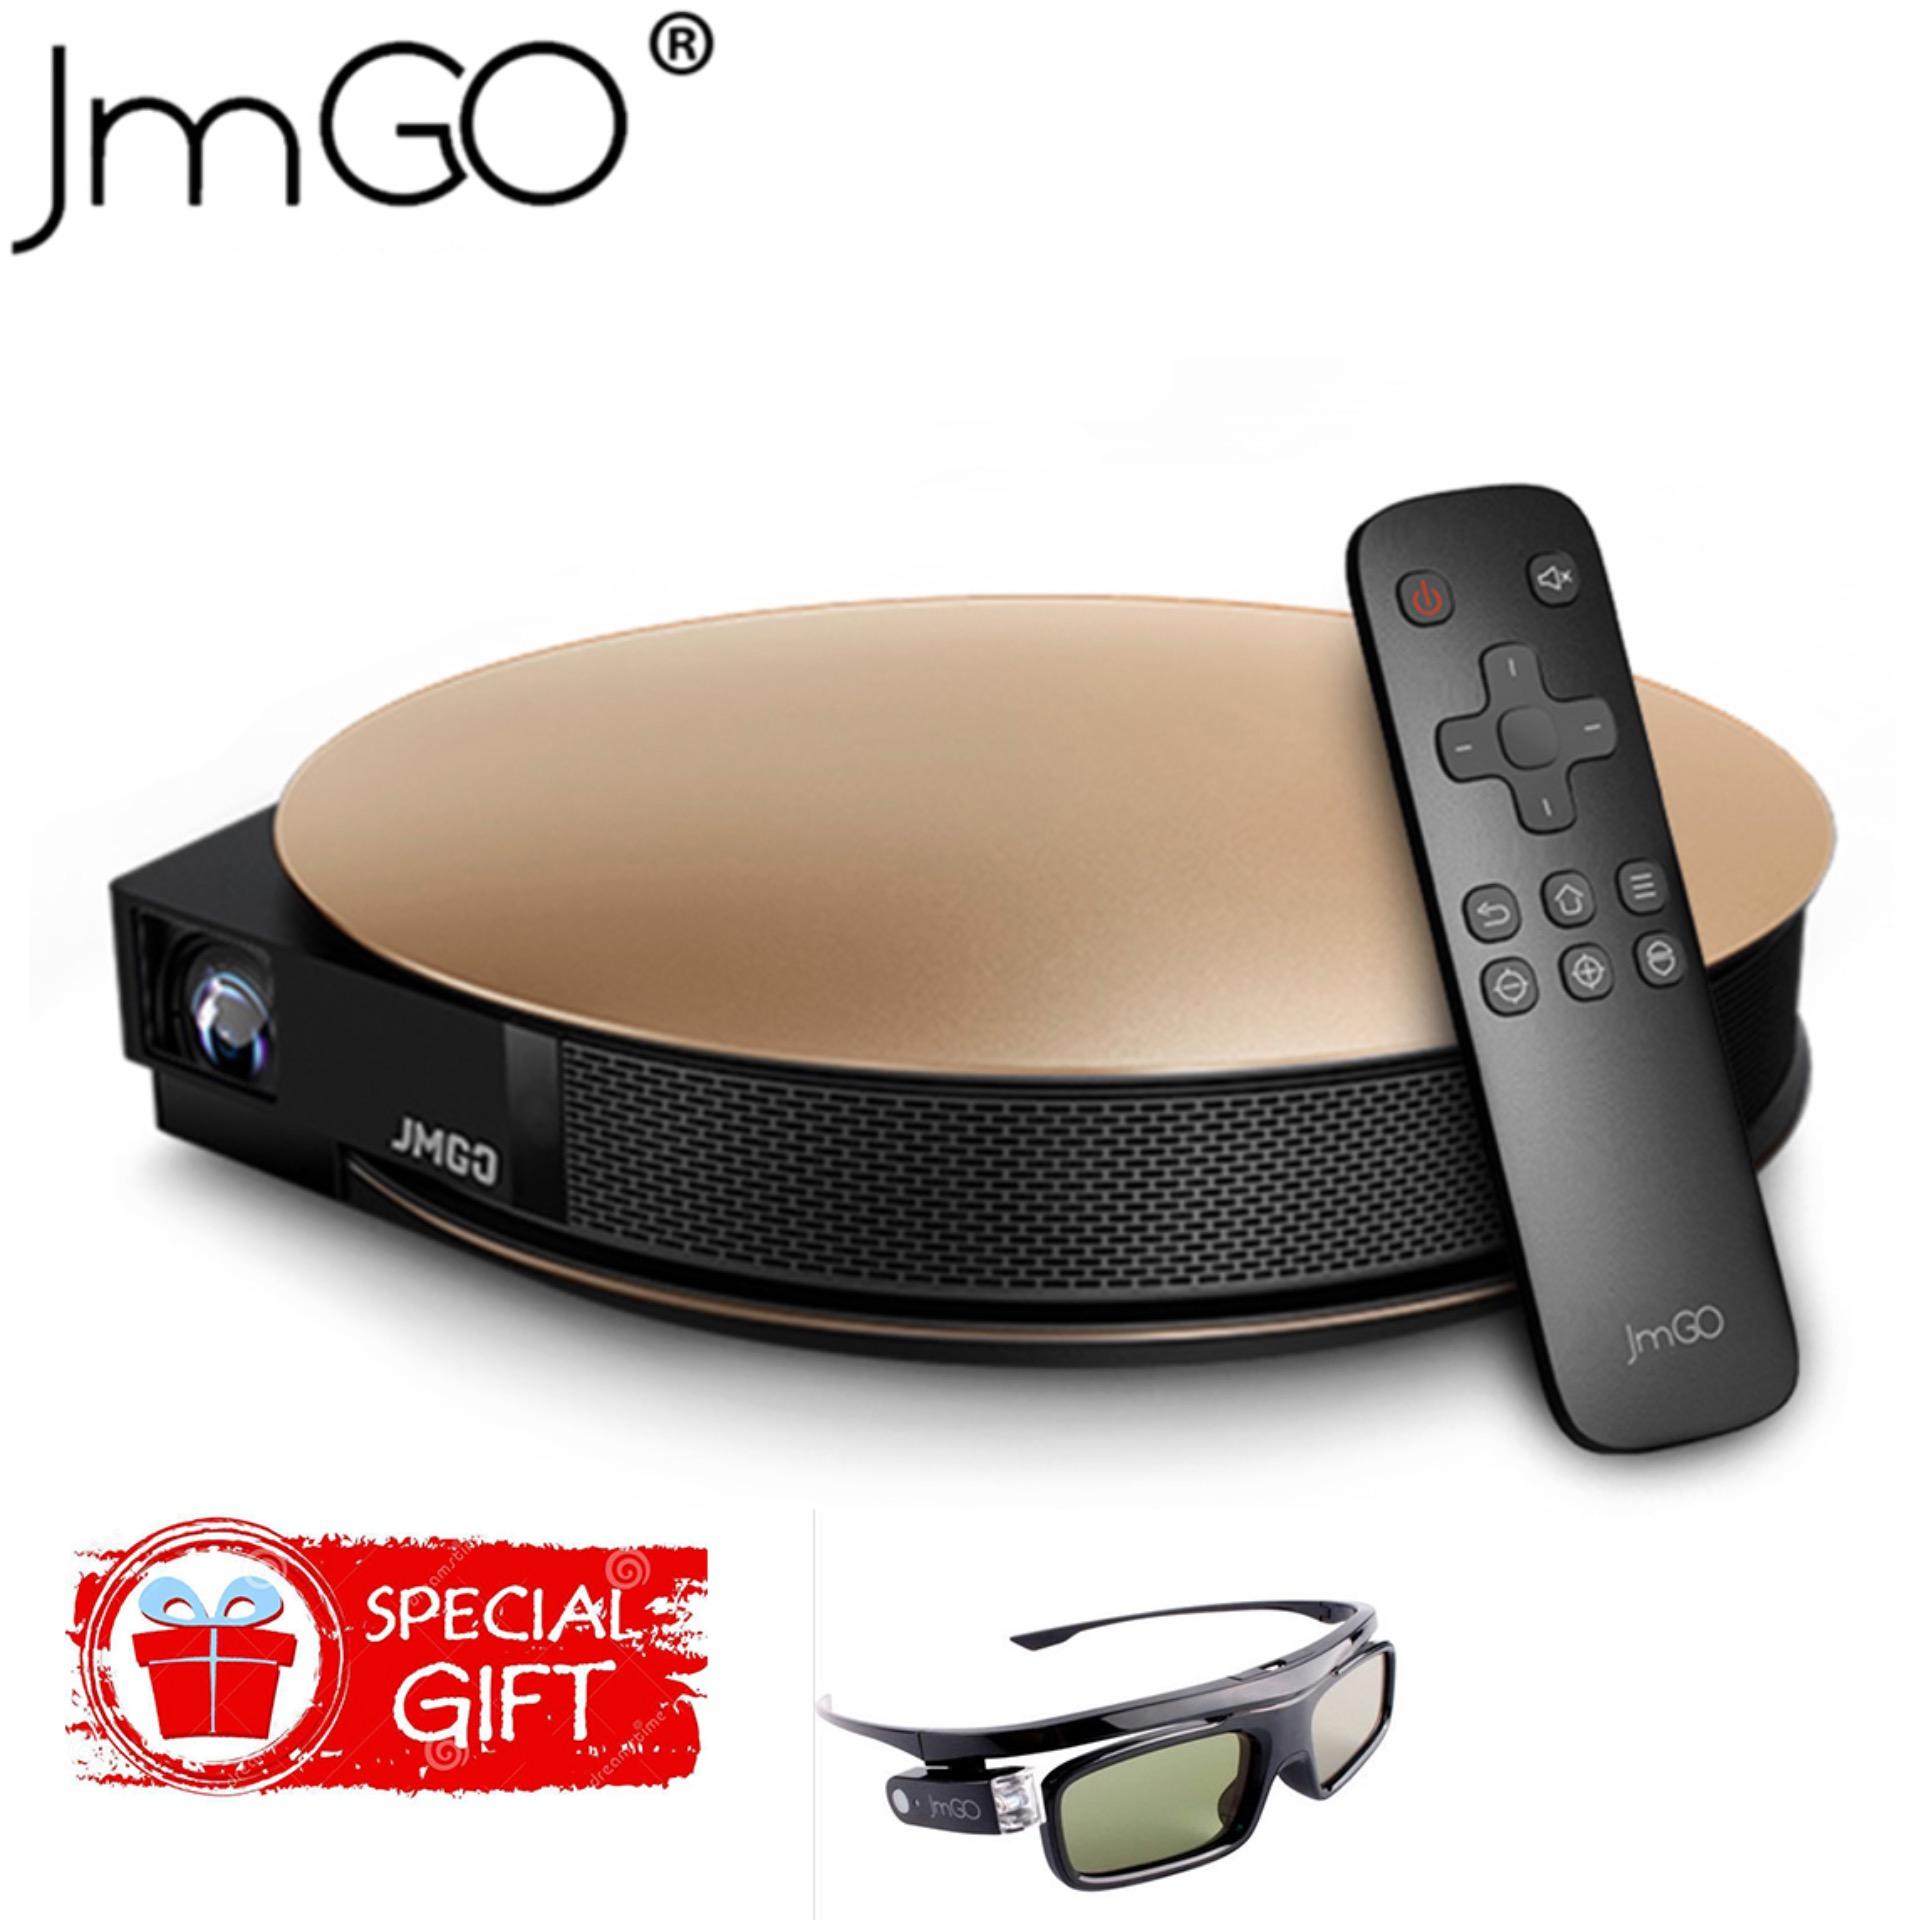 Máy chiếu thông minh JMGO G3 Pro (2017) FullHD - Hỗ trợ 4K, 3D, Android + tặng kính 3D JMGO